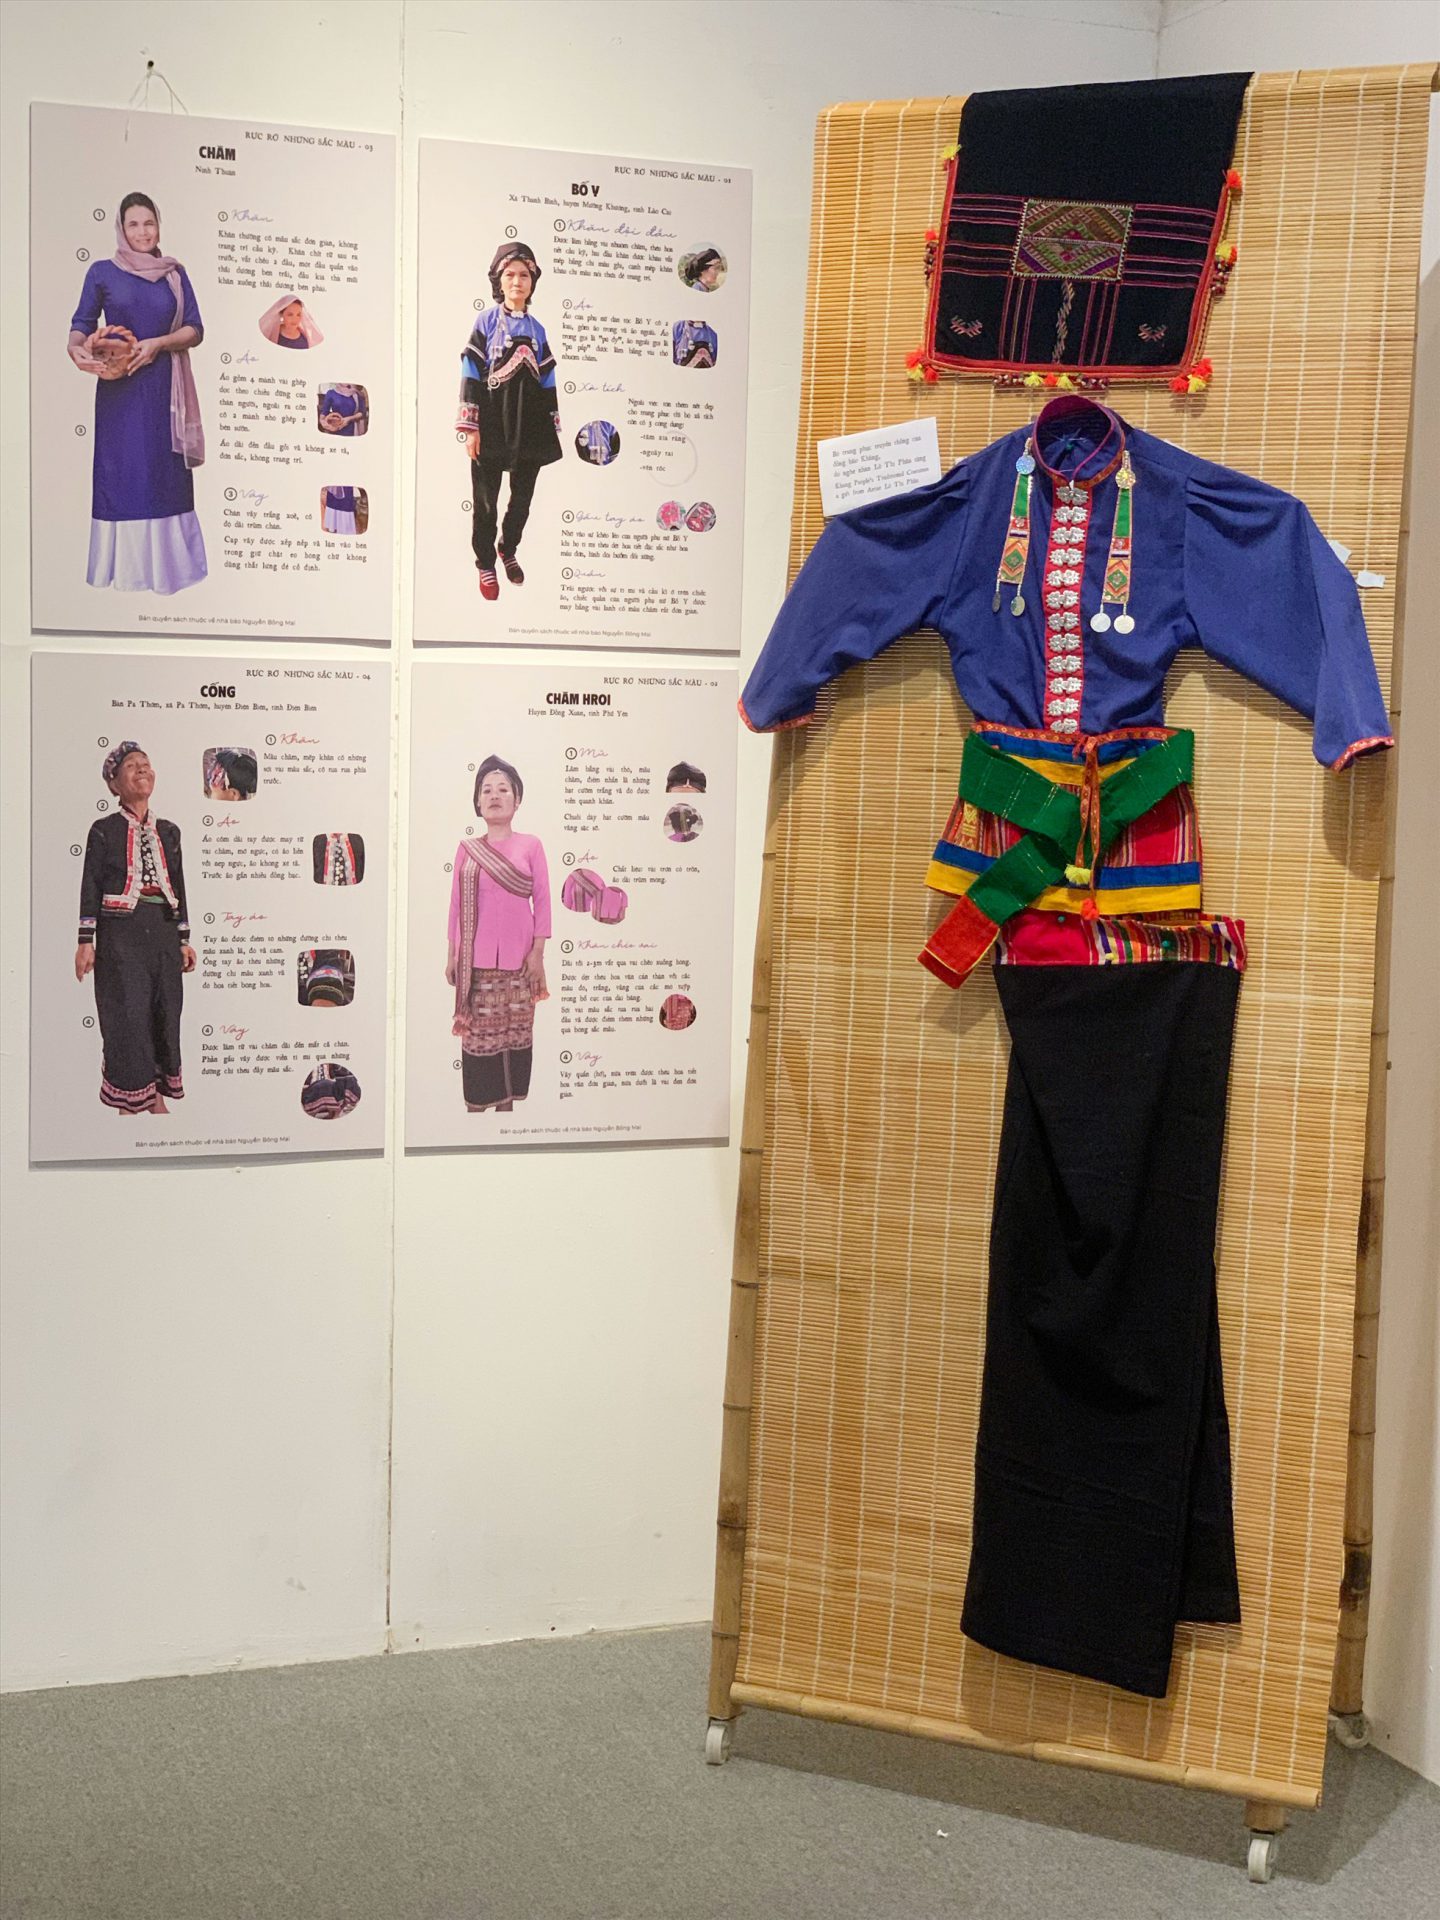 Trang phục truyền thống của đồng bào Kháng do nghệ nhân Lò Thị Pháu tặng triển lãm. Ảnh: Huyền Phạm